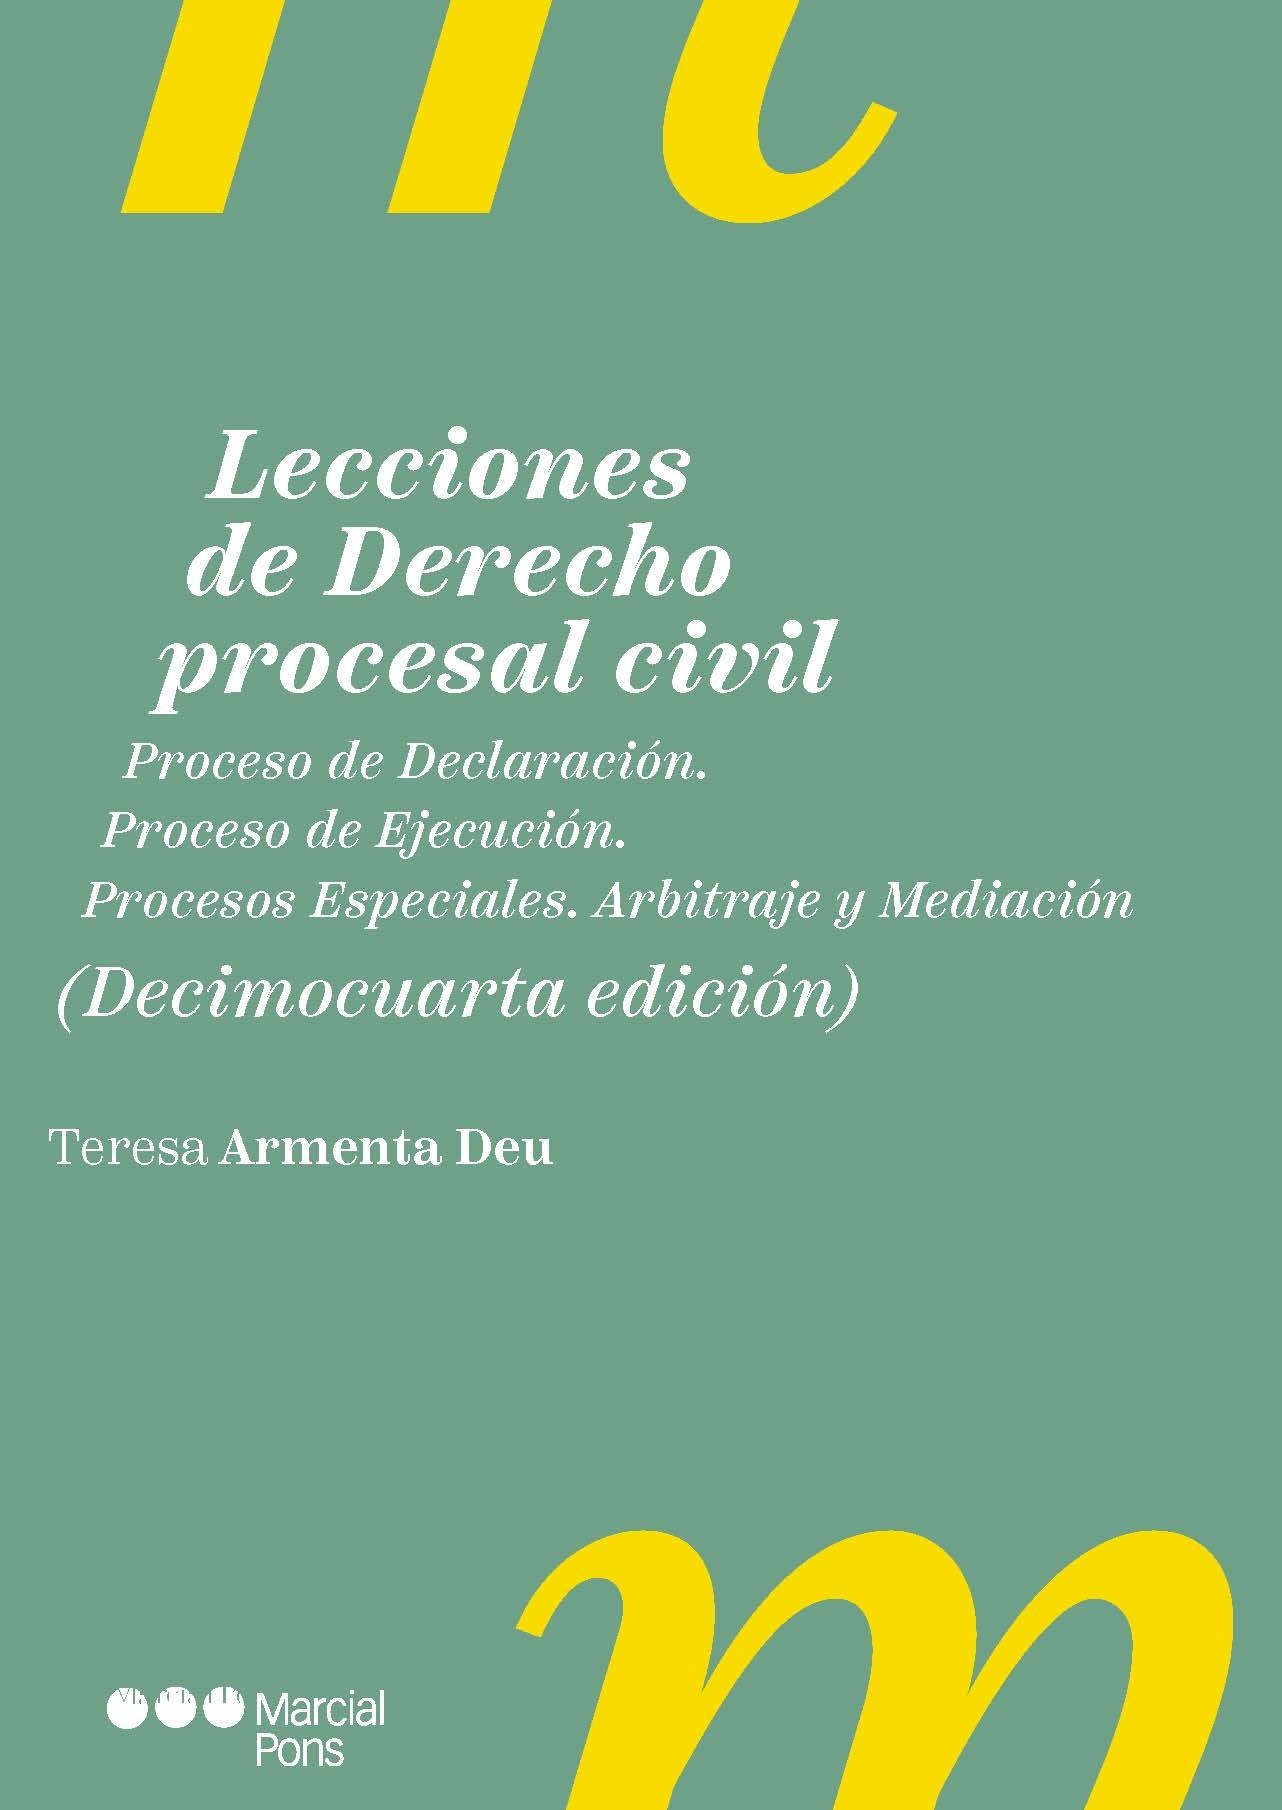 Lecciones de Derecho procesal civil "Proceso de Declaración. Proceso de Ejecución. Procesos Especiales. Arbitraje y mediación"